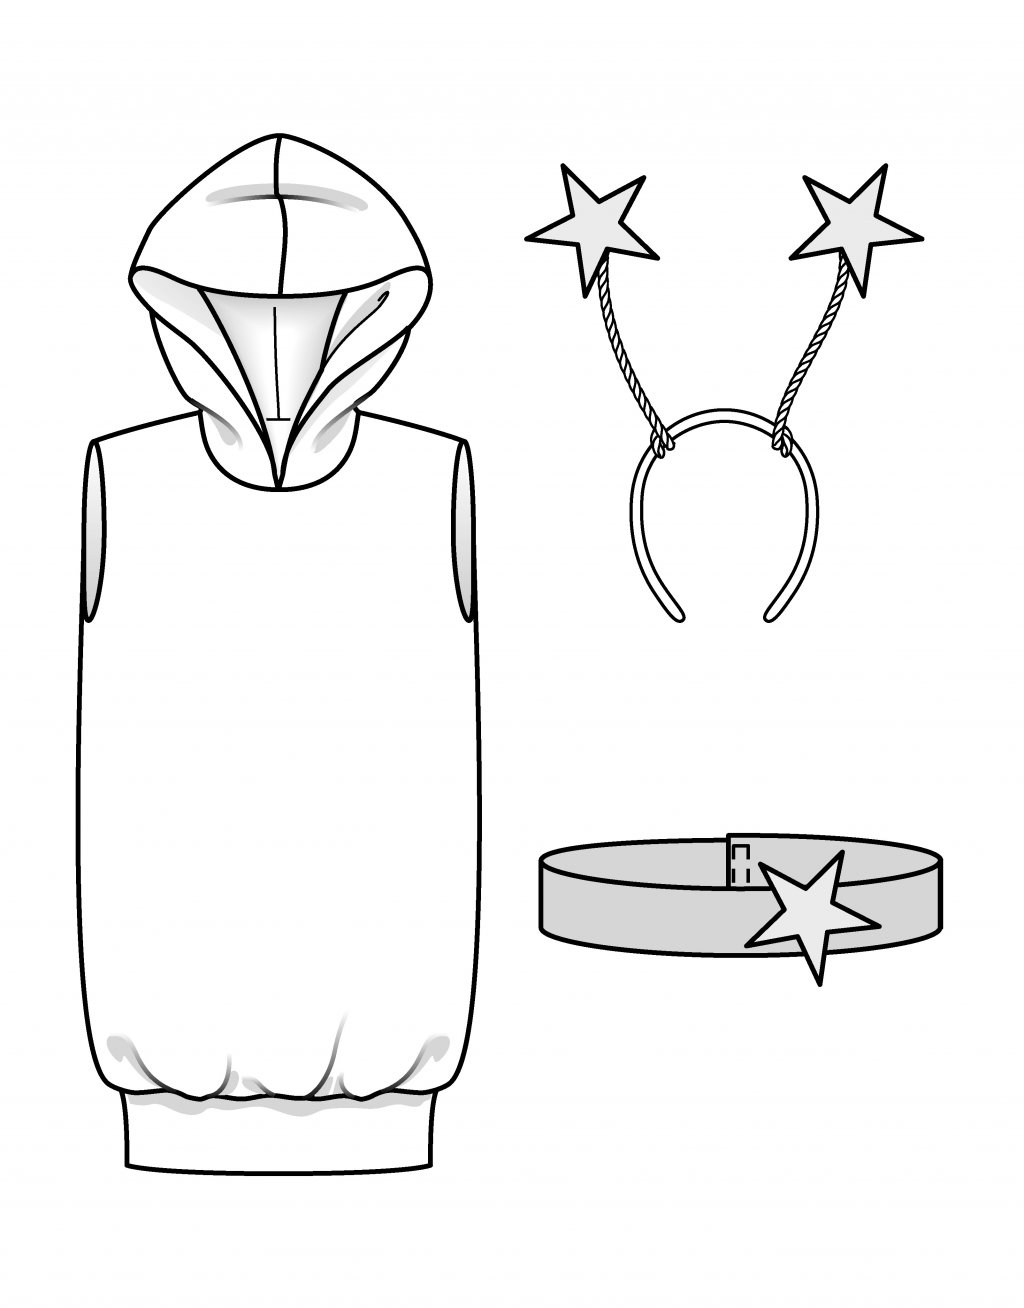 Dětský kostým „Hvězdný trpaslík“ 134